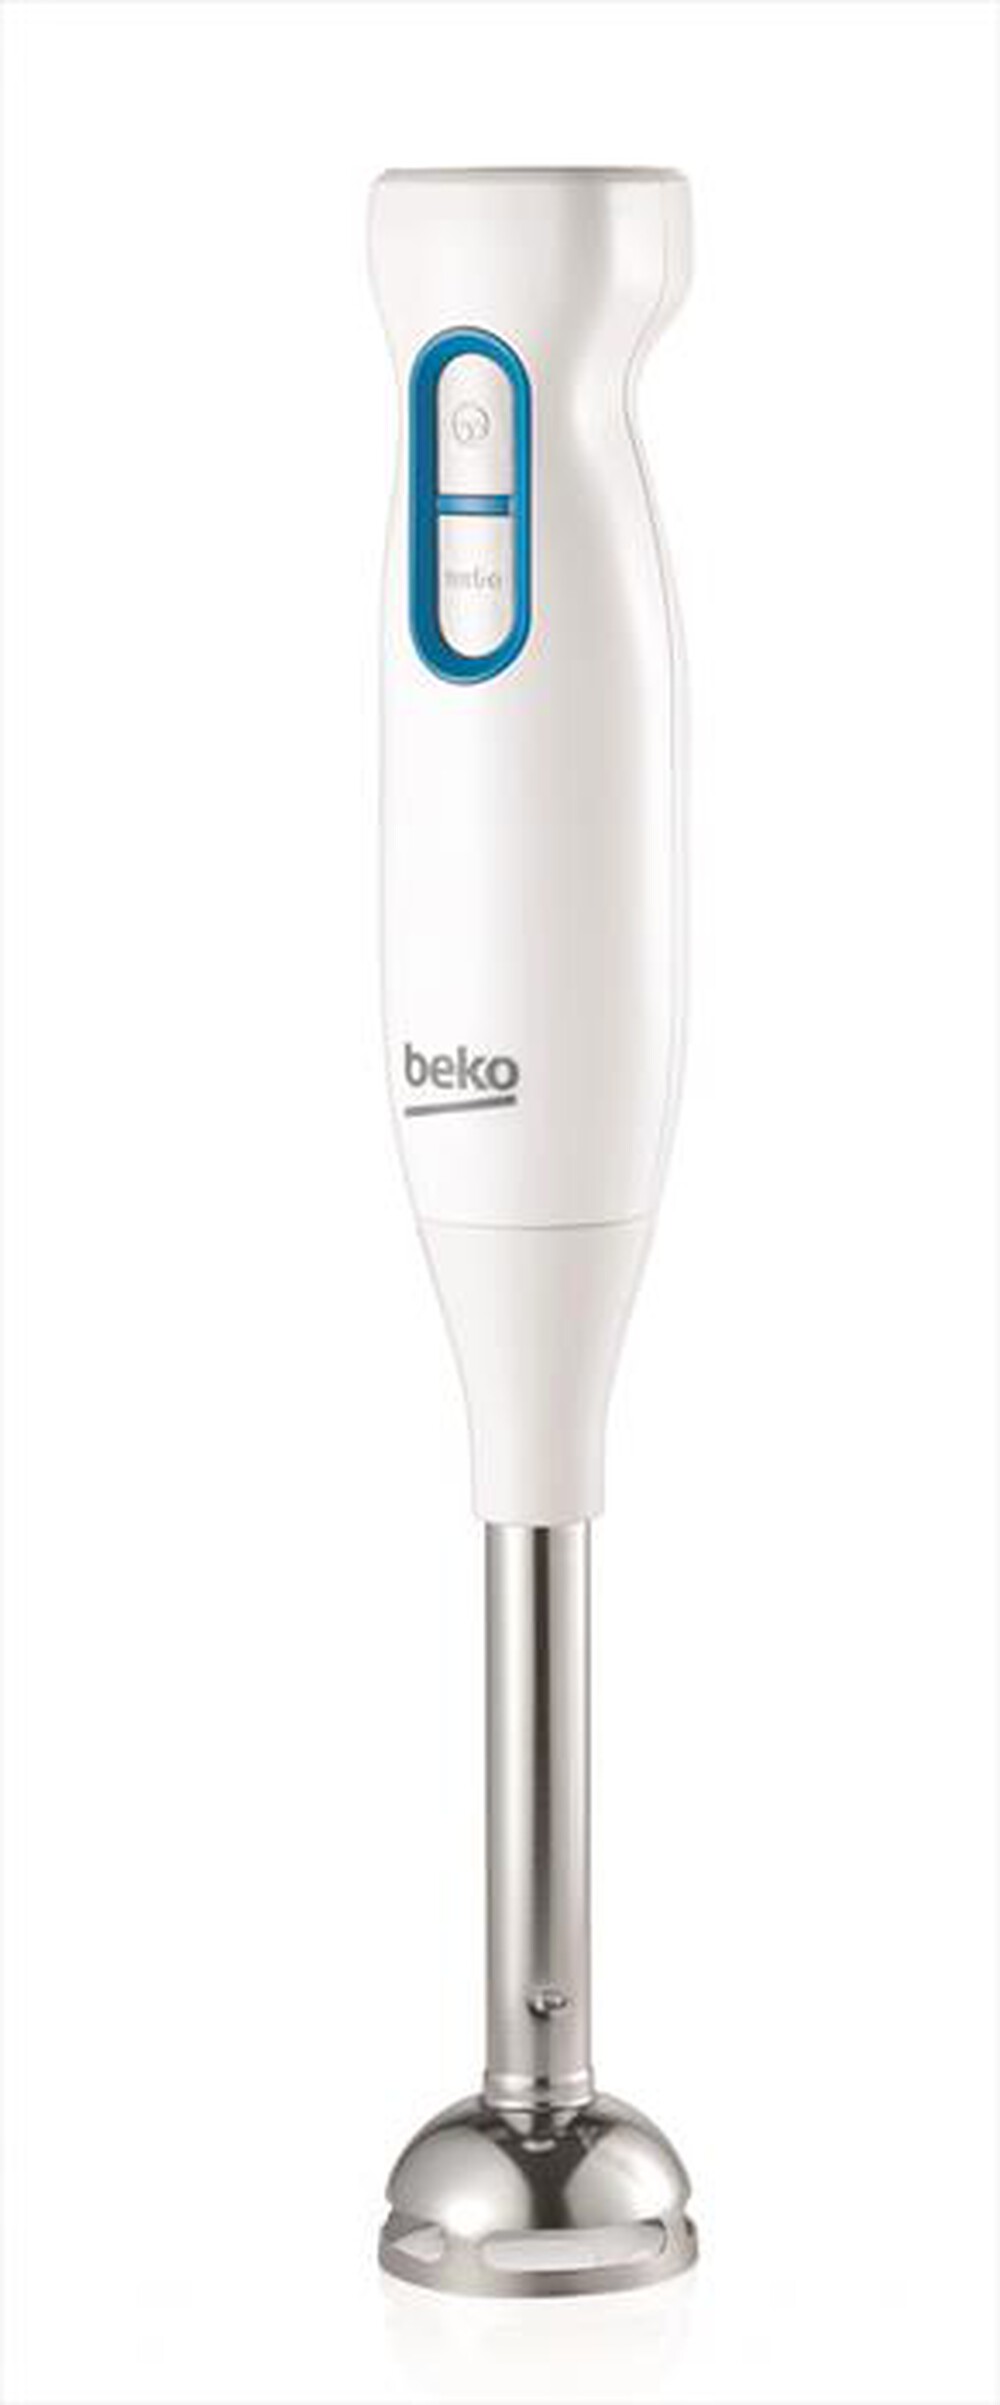 "BEKO - HBS5550W-Bianco"